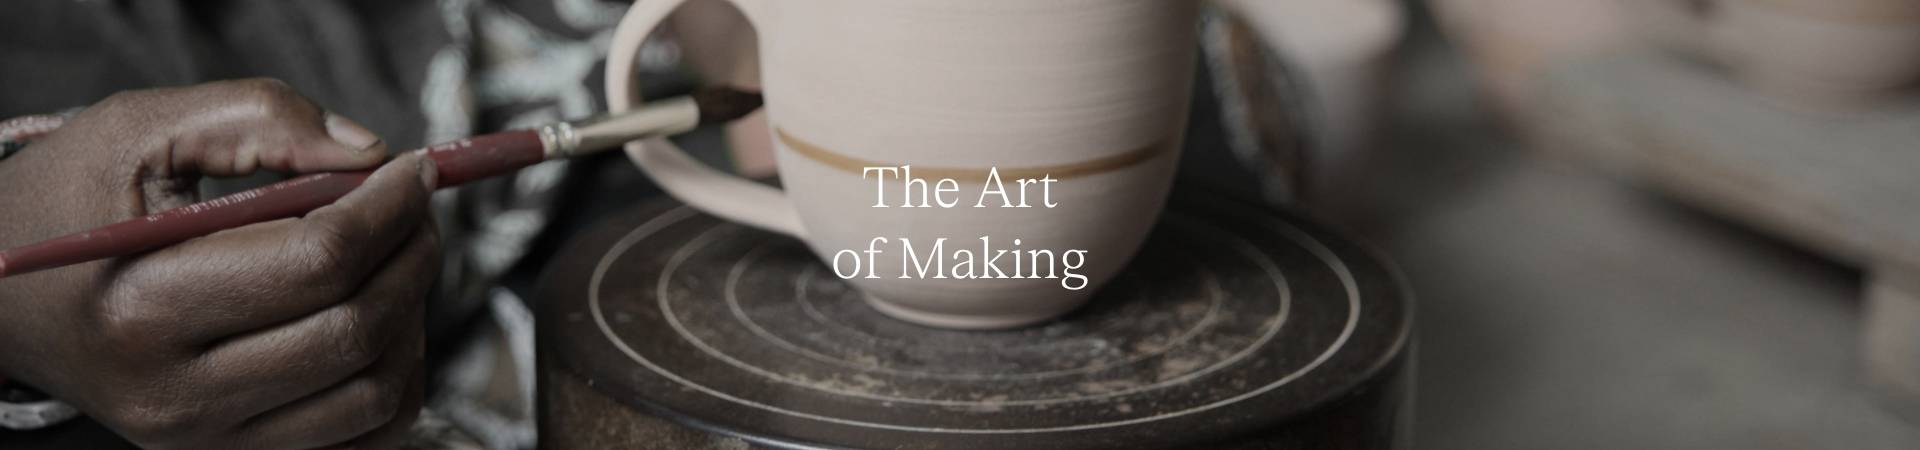 The Art of Making.jpg